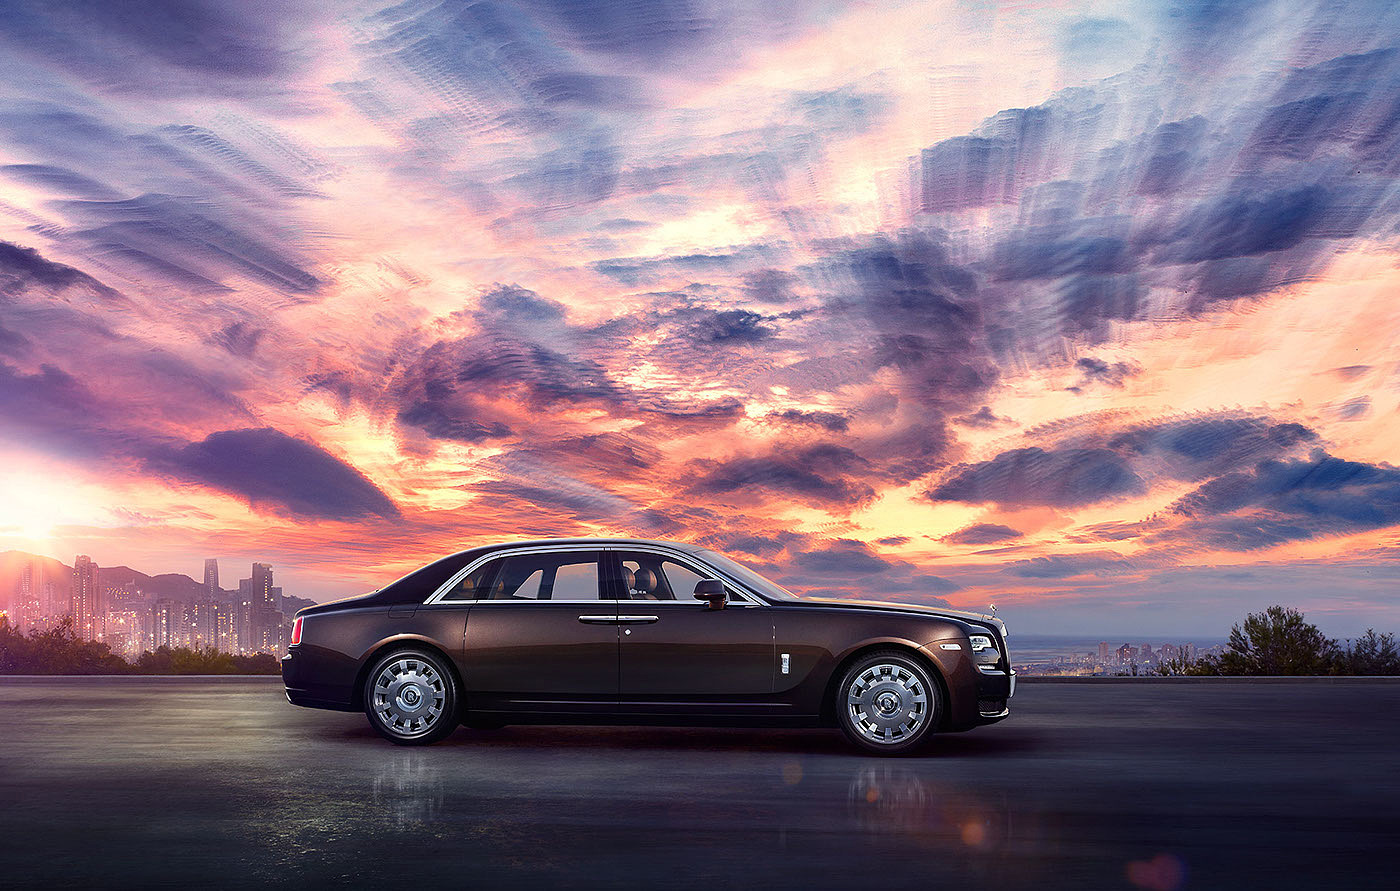 【高清拍摄】Rolls Royce Ghost 顶级豪车广告拍摄多角度细节展示～